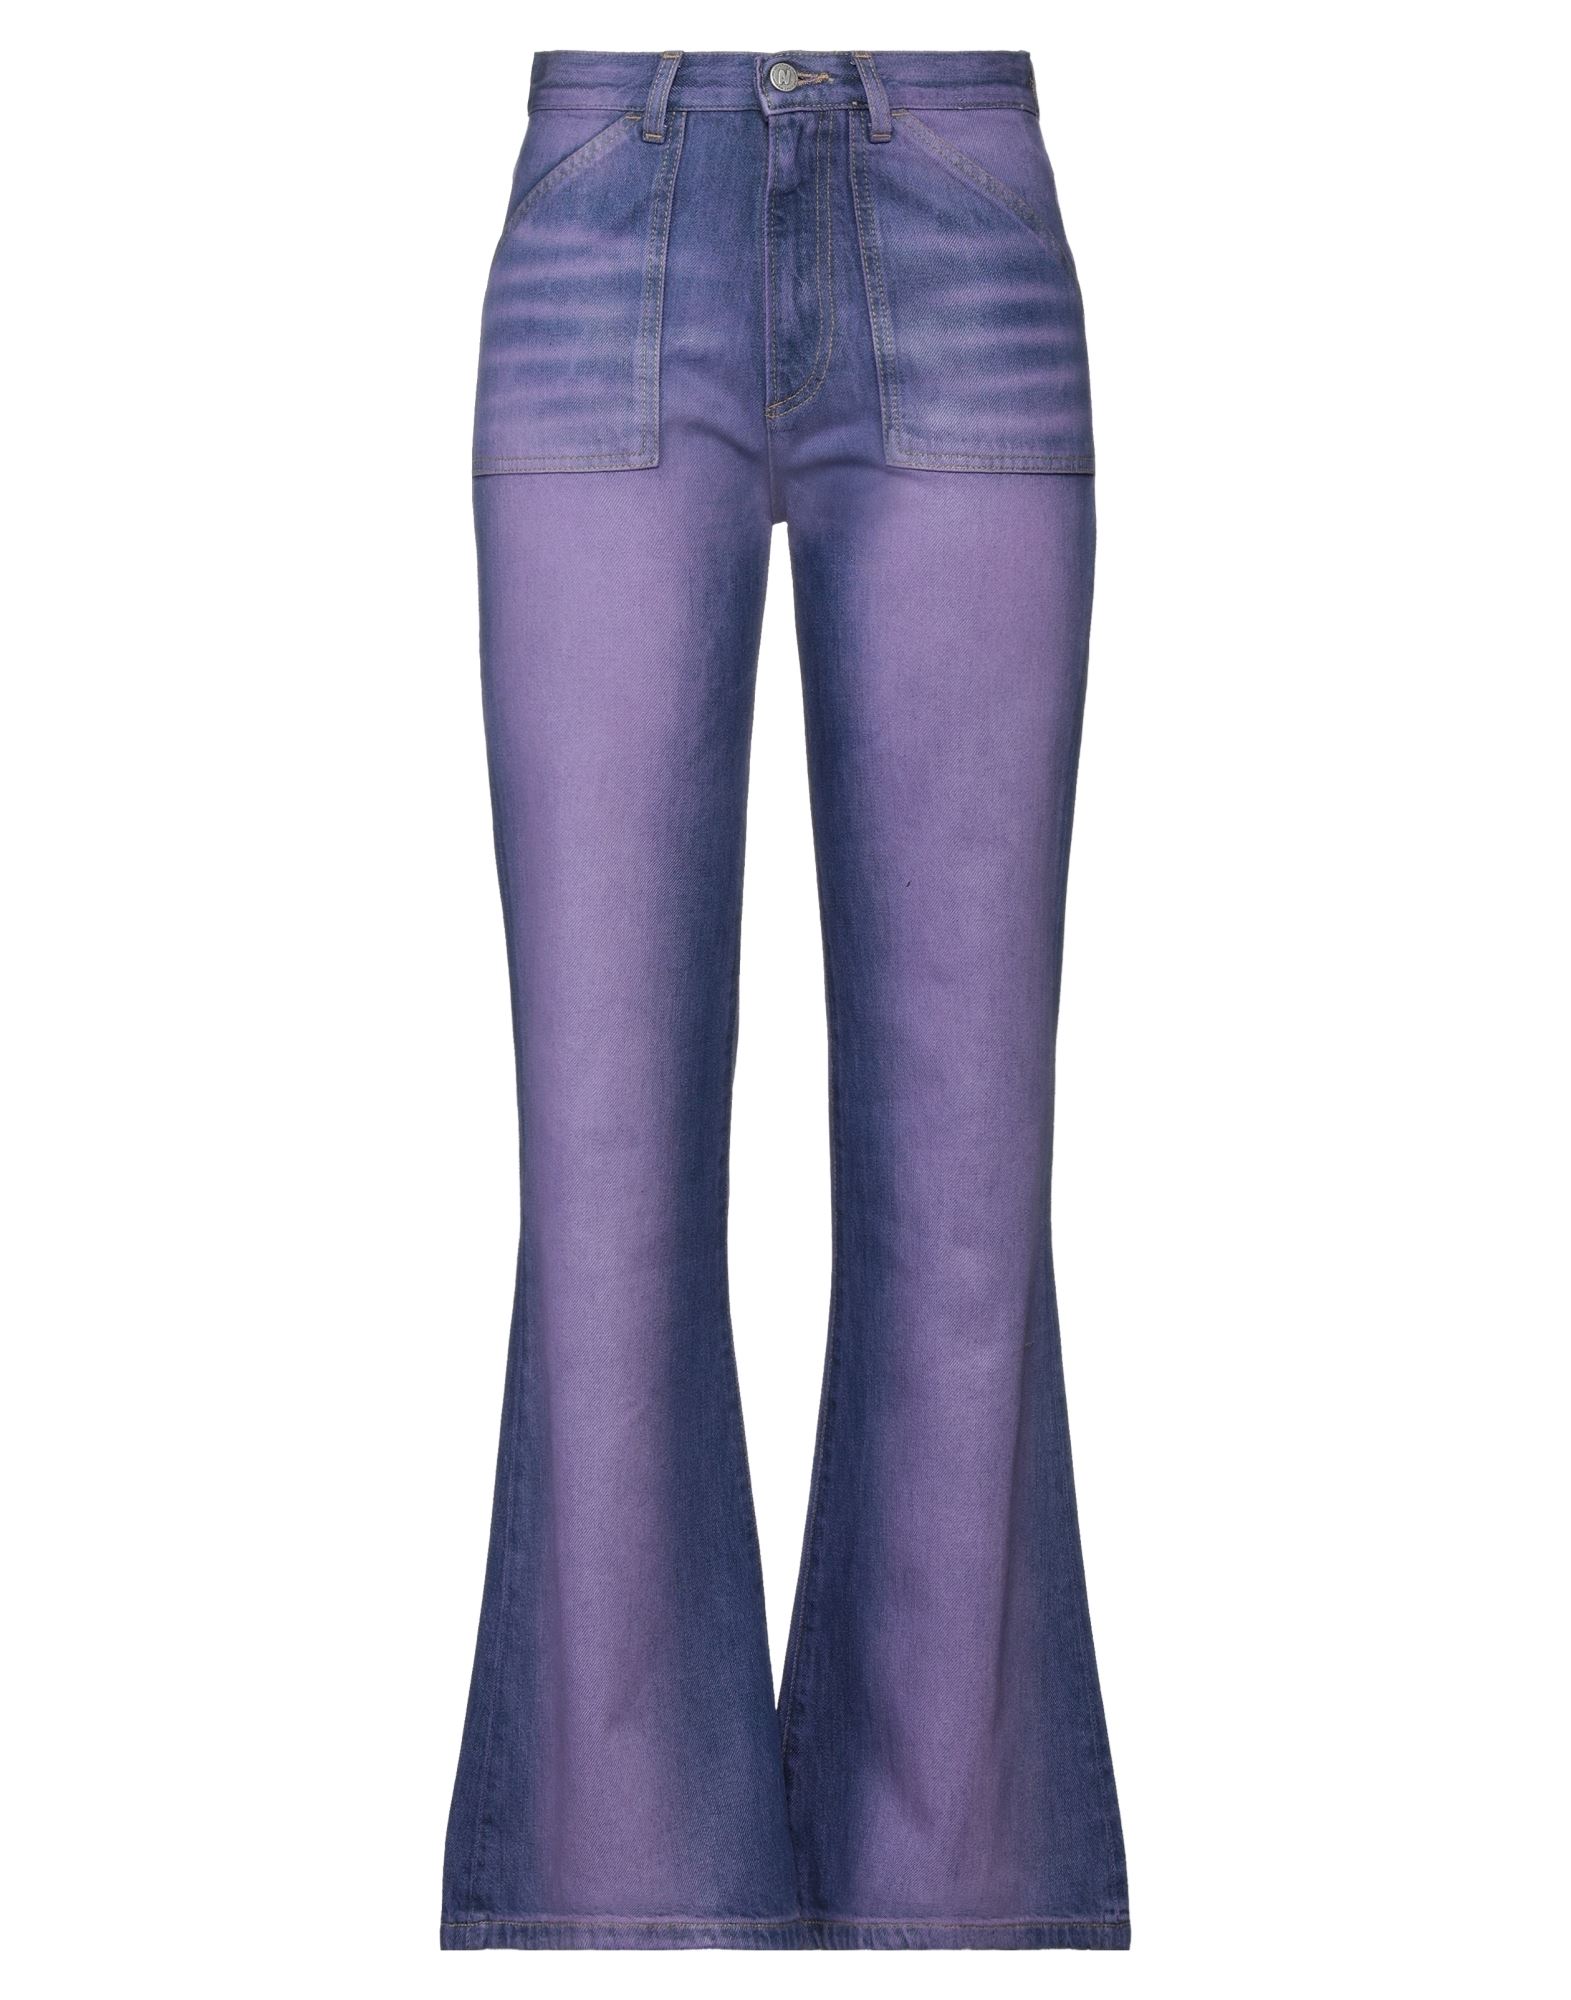 Avavav Woman Denim Pants Purple Size 29 Cotton